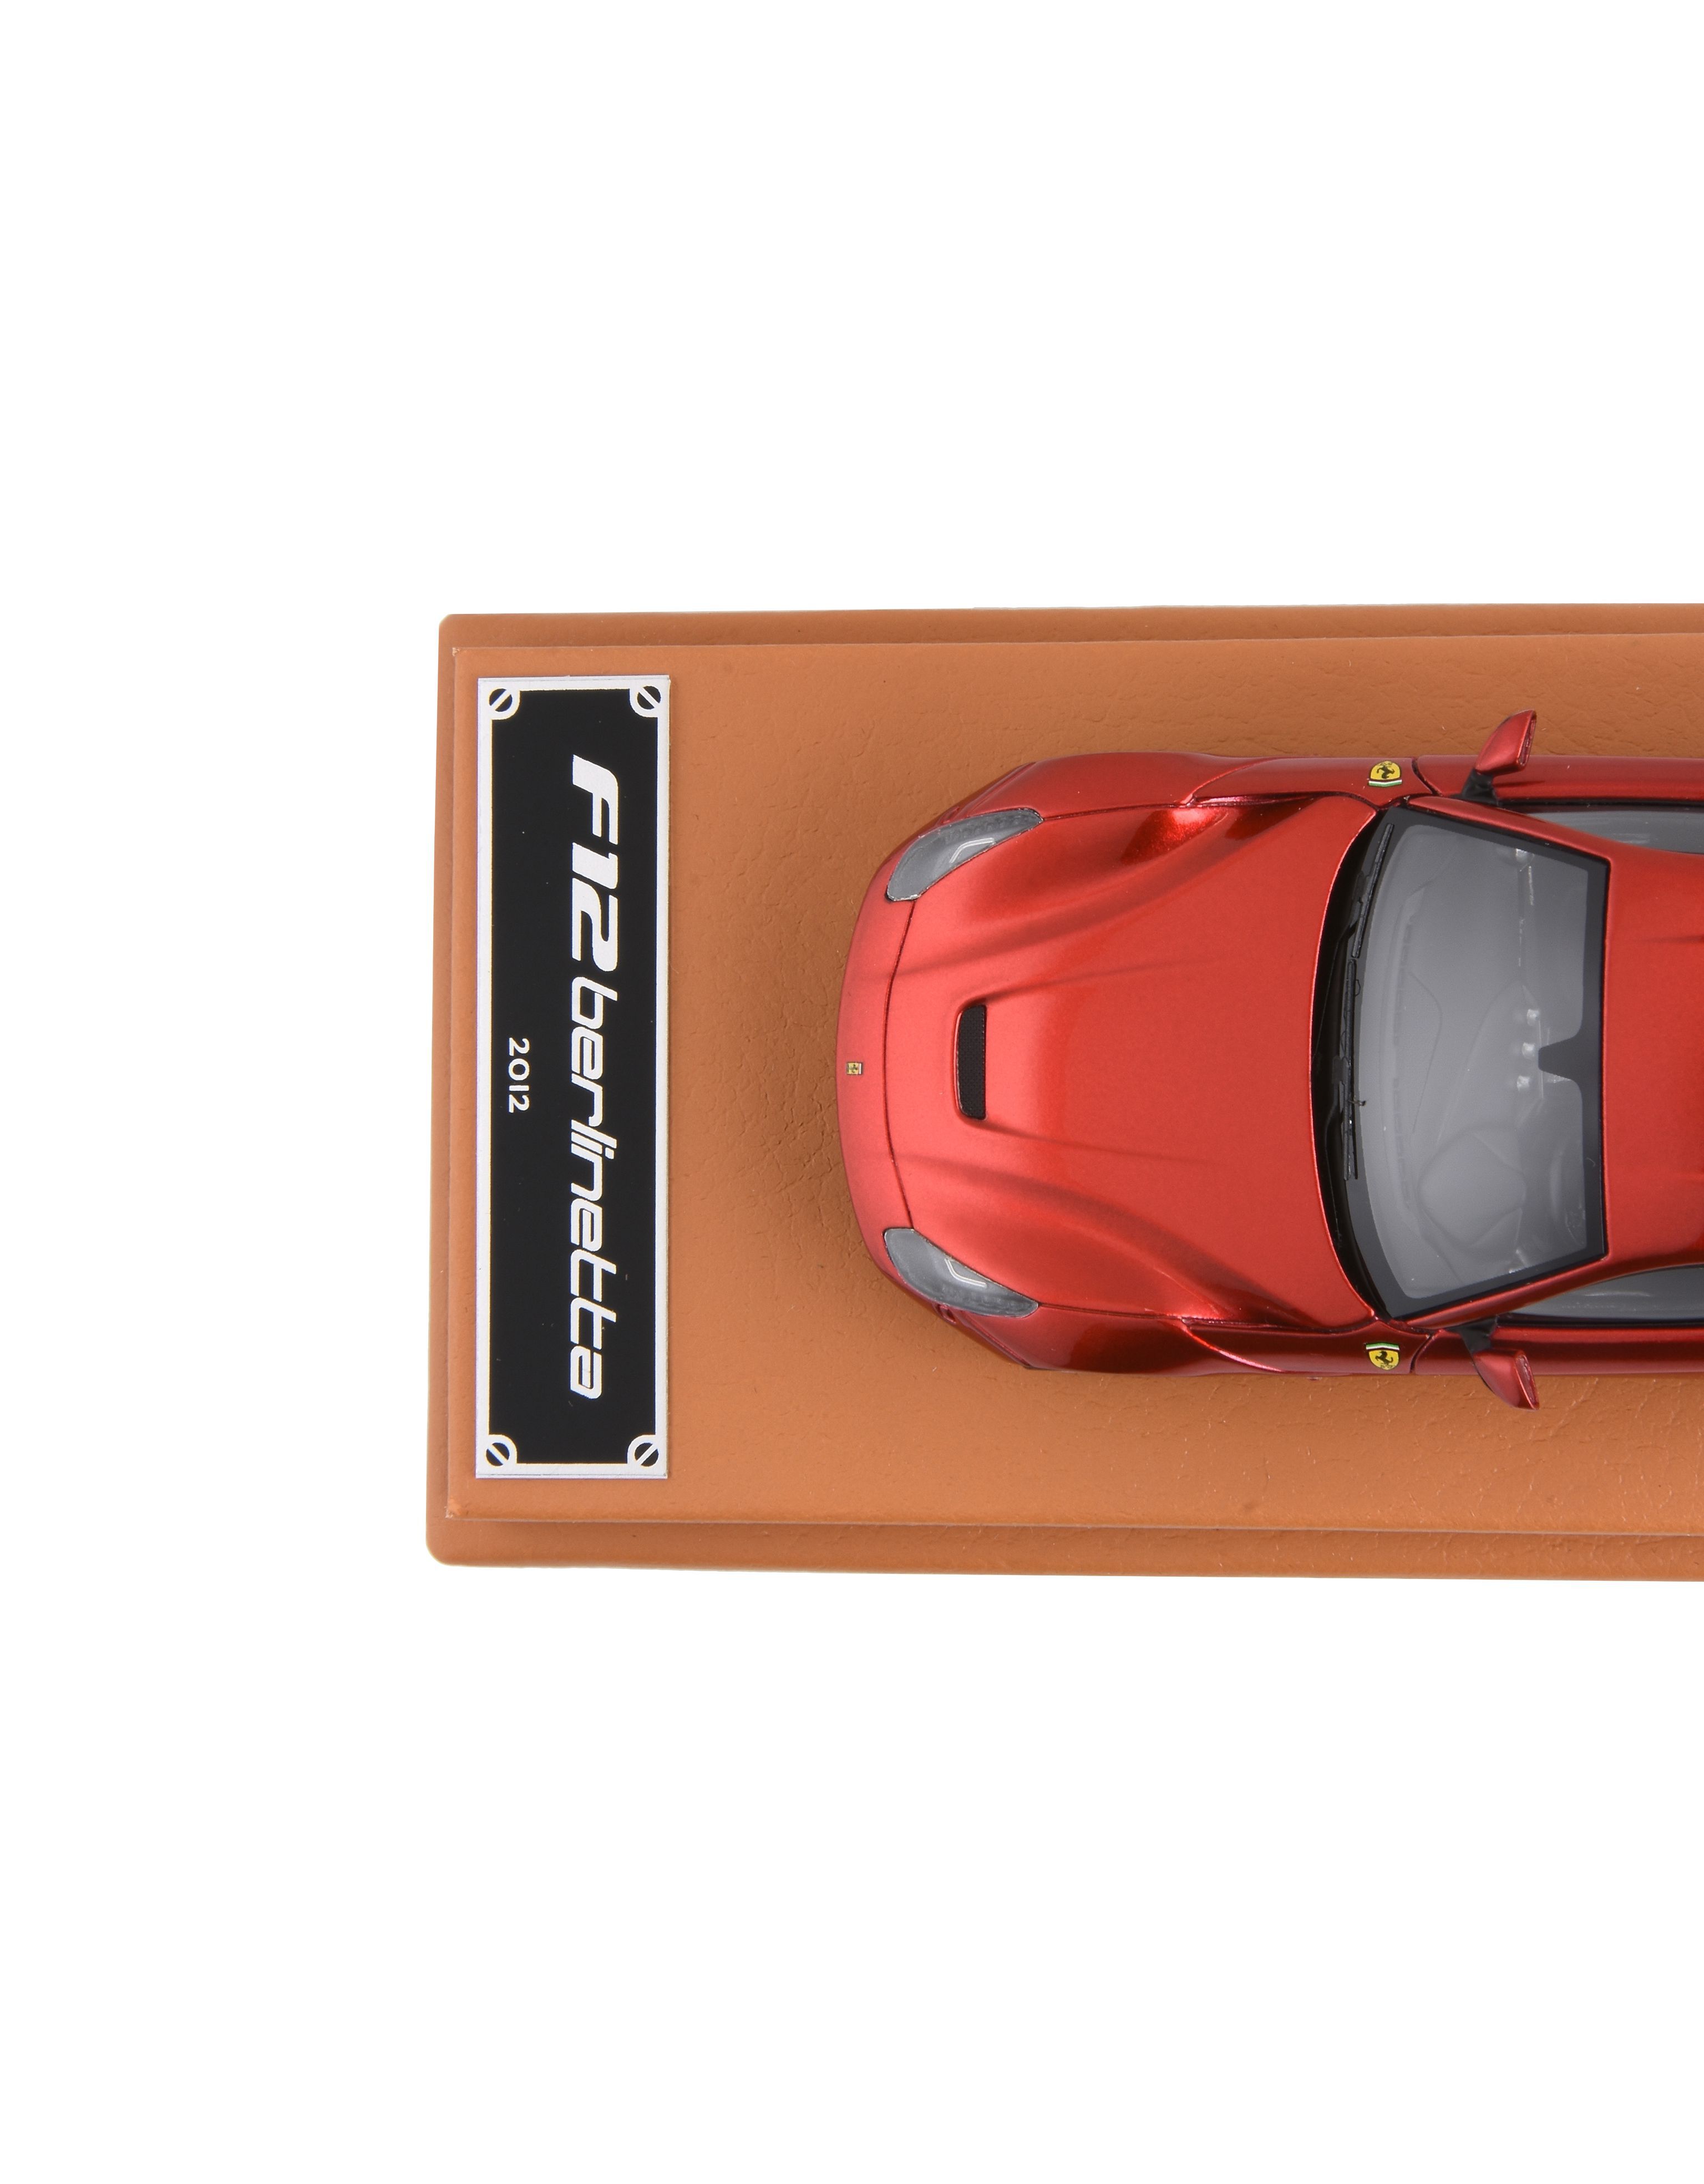 Ferrari Ferrari F12berlinetta 1:43 scale model Red 12895f